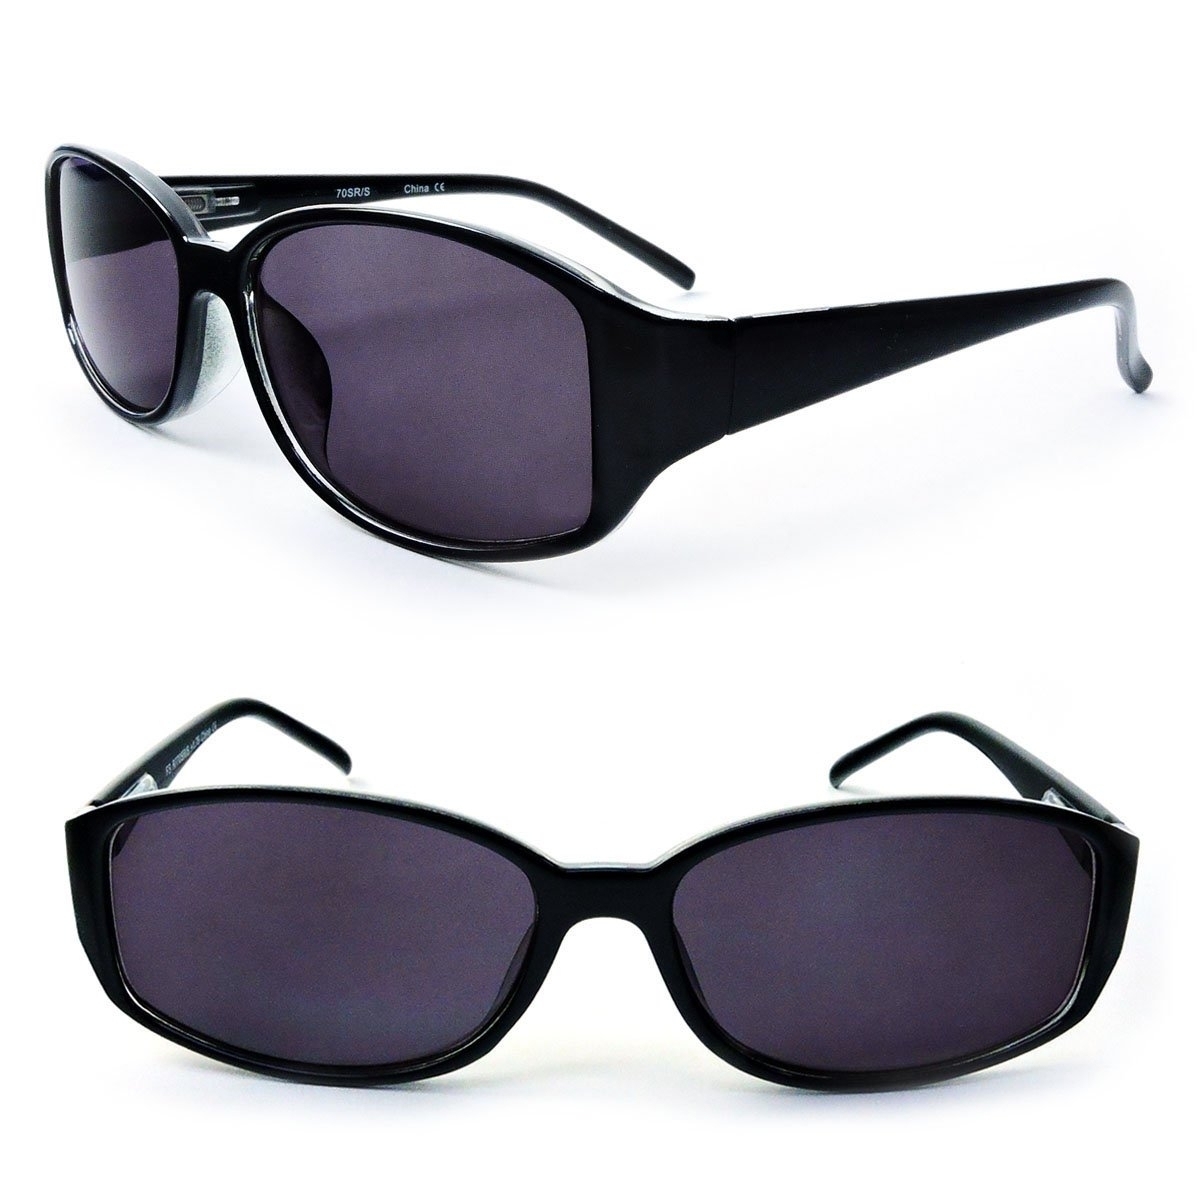 Classic Sun Readers Full Lens Spring Hinges Reading Sunglasses For Women - Black, +1.00